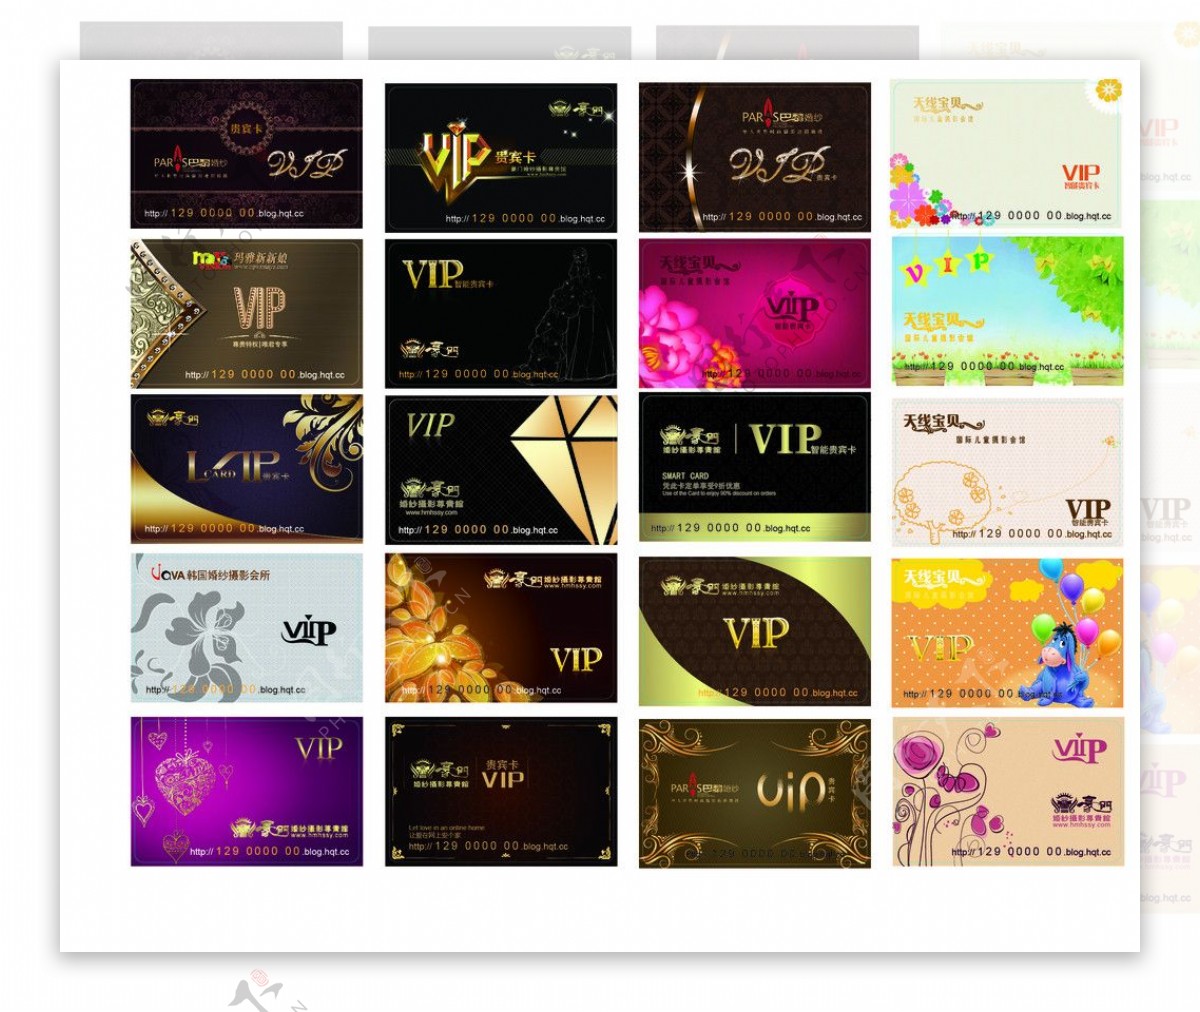 VIP会员卡部分位图组成图片